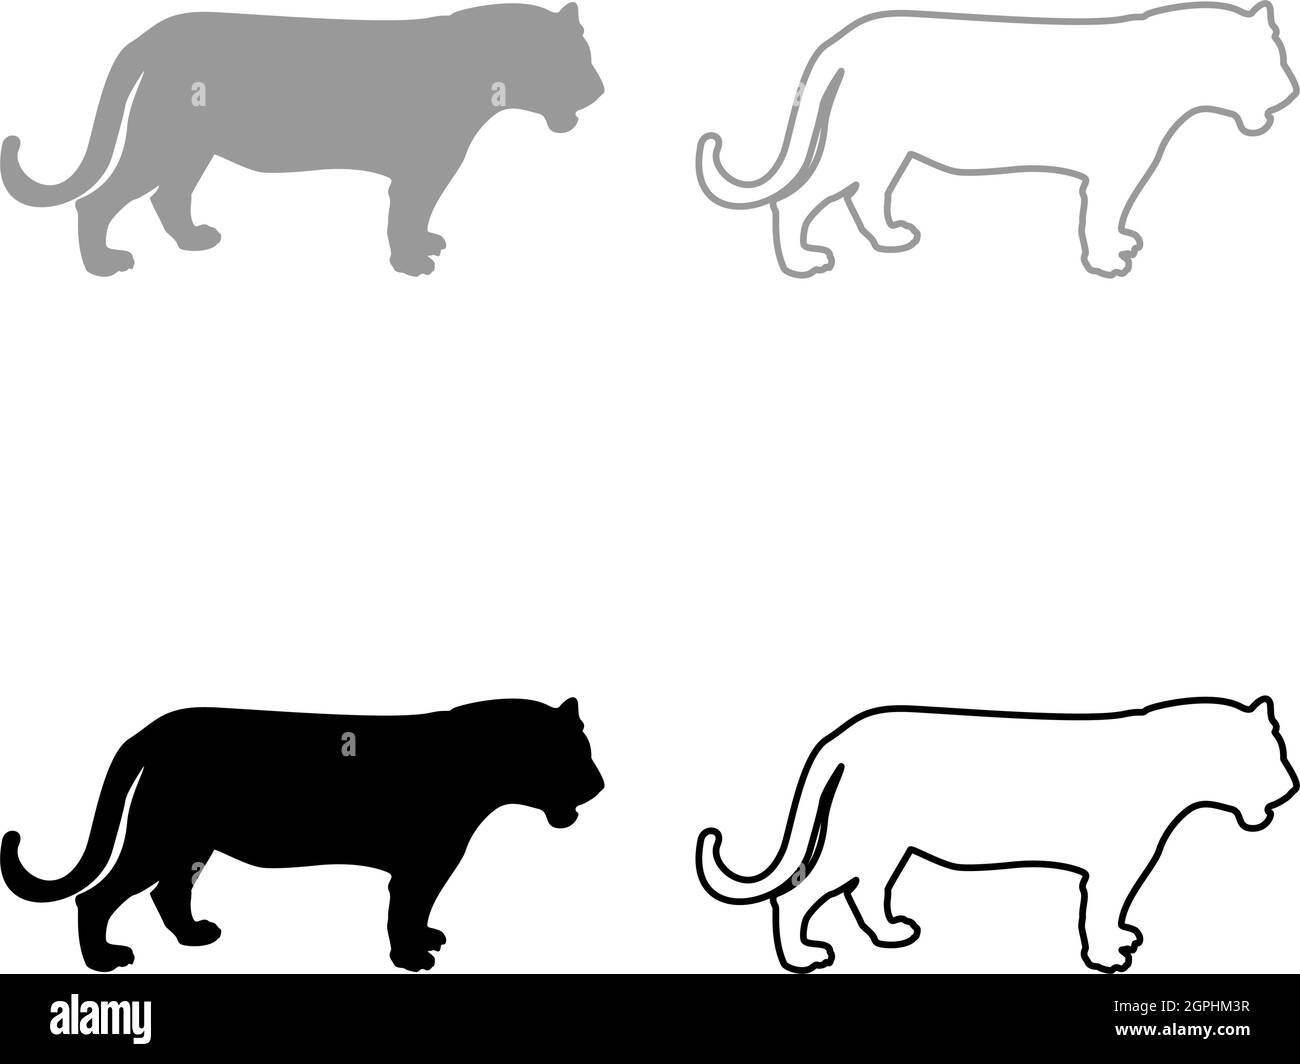 Image de style de contour Uni de l'illustration de vecteur de couleur gris silhouette de tigre Illustration de Vecteur